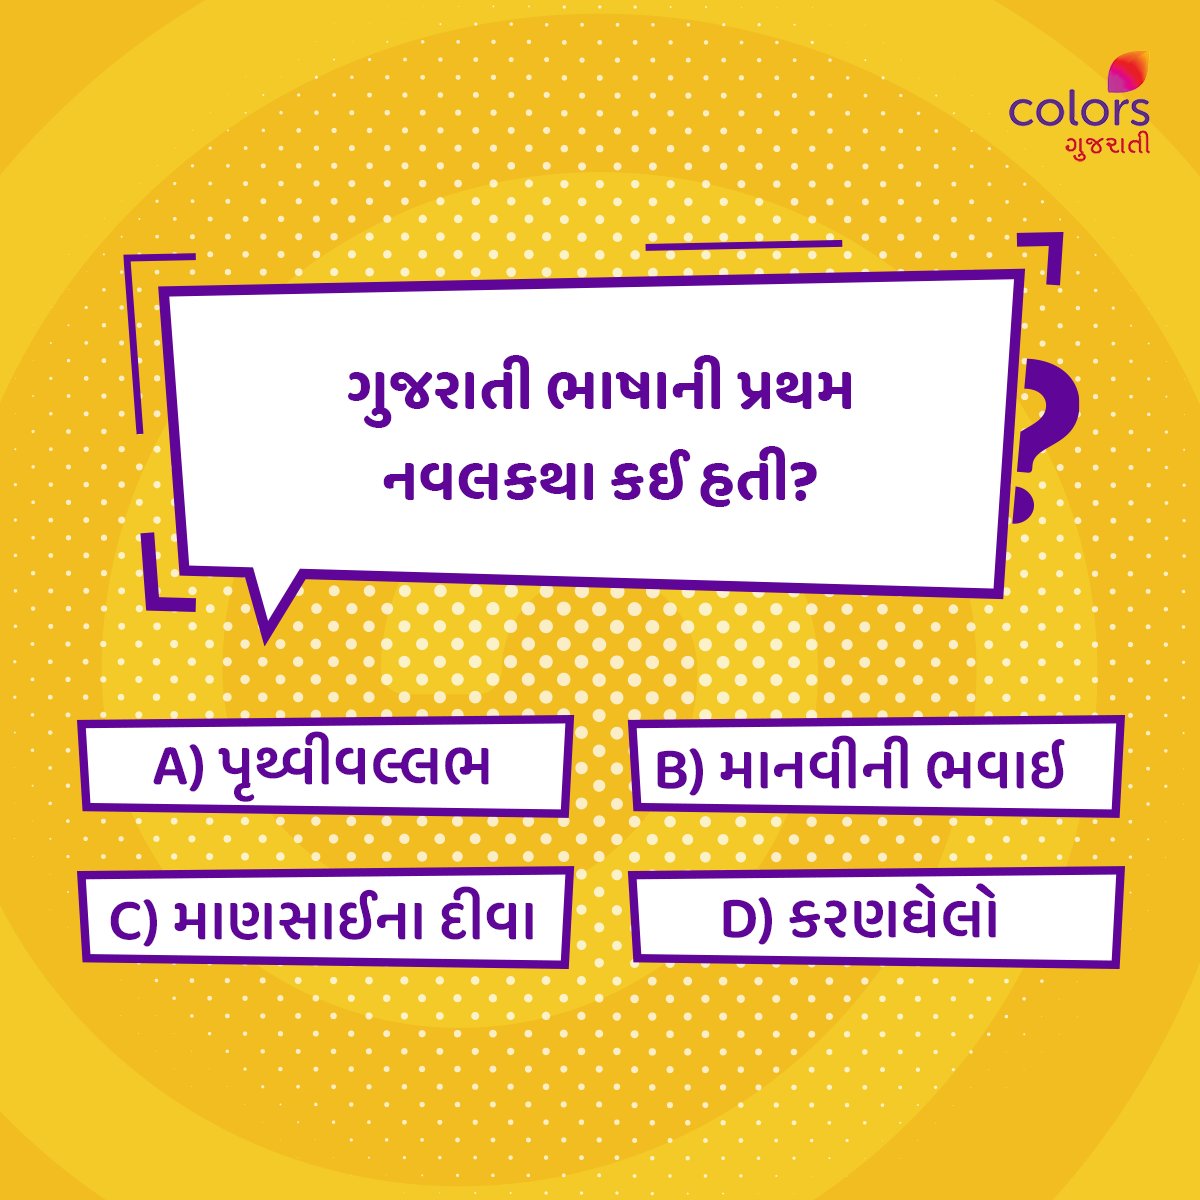 જો તમને પણ નવલકથા વાંચવાનું ગમતું હોય 📖, તો આ પ્રશ્નનો જવાબ Comment માં જણાવો.👇

#Colorsgujarati #Gujarat #Quiz #Novel #Facts #generalquiz